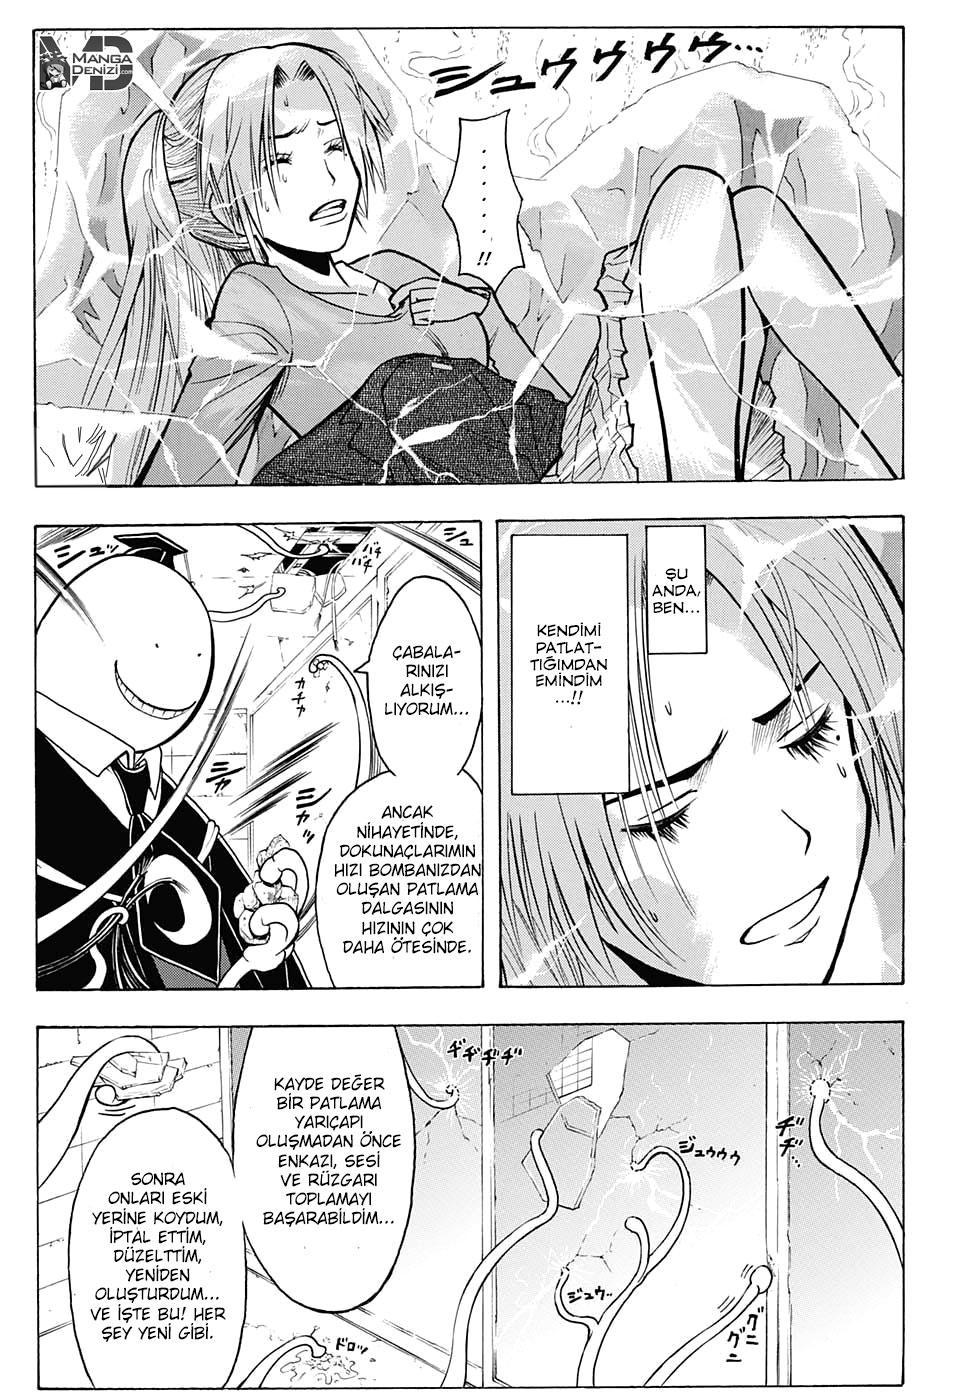 Assassination Classroom mangasının 180.4 bölümünün 4. sayfasını okuyorsunuz.